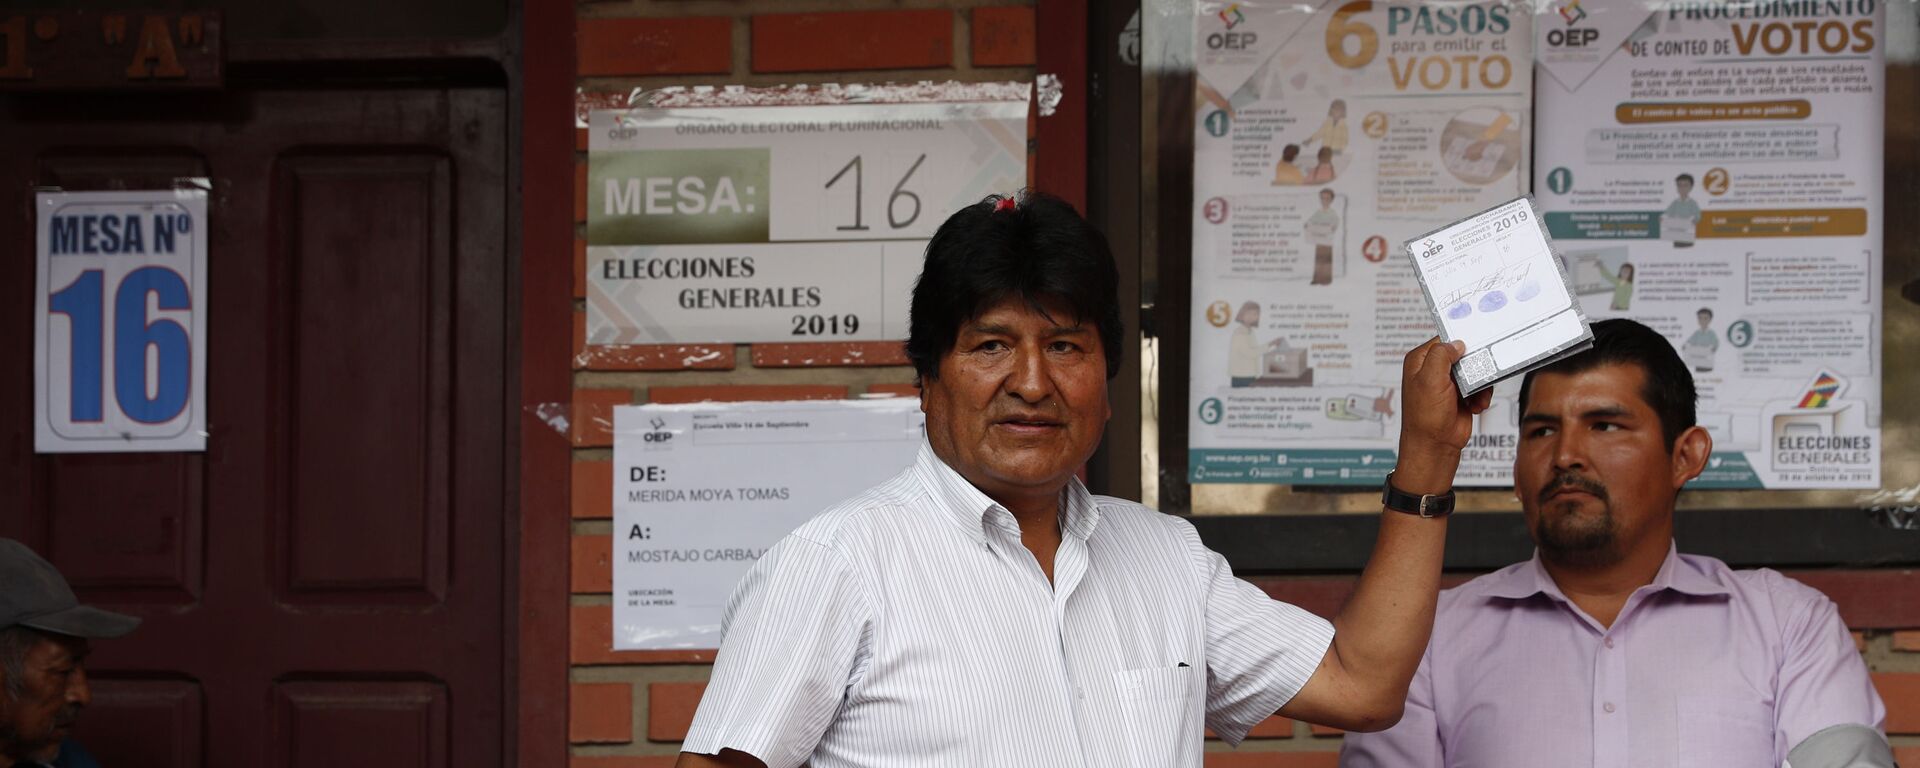 Evo Morales votando durante las elecciones de octubre de 2019 en Bolivia - Sputnik Mundo, 1920, 22.10.2021